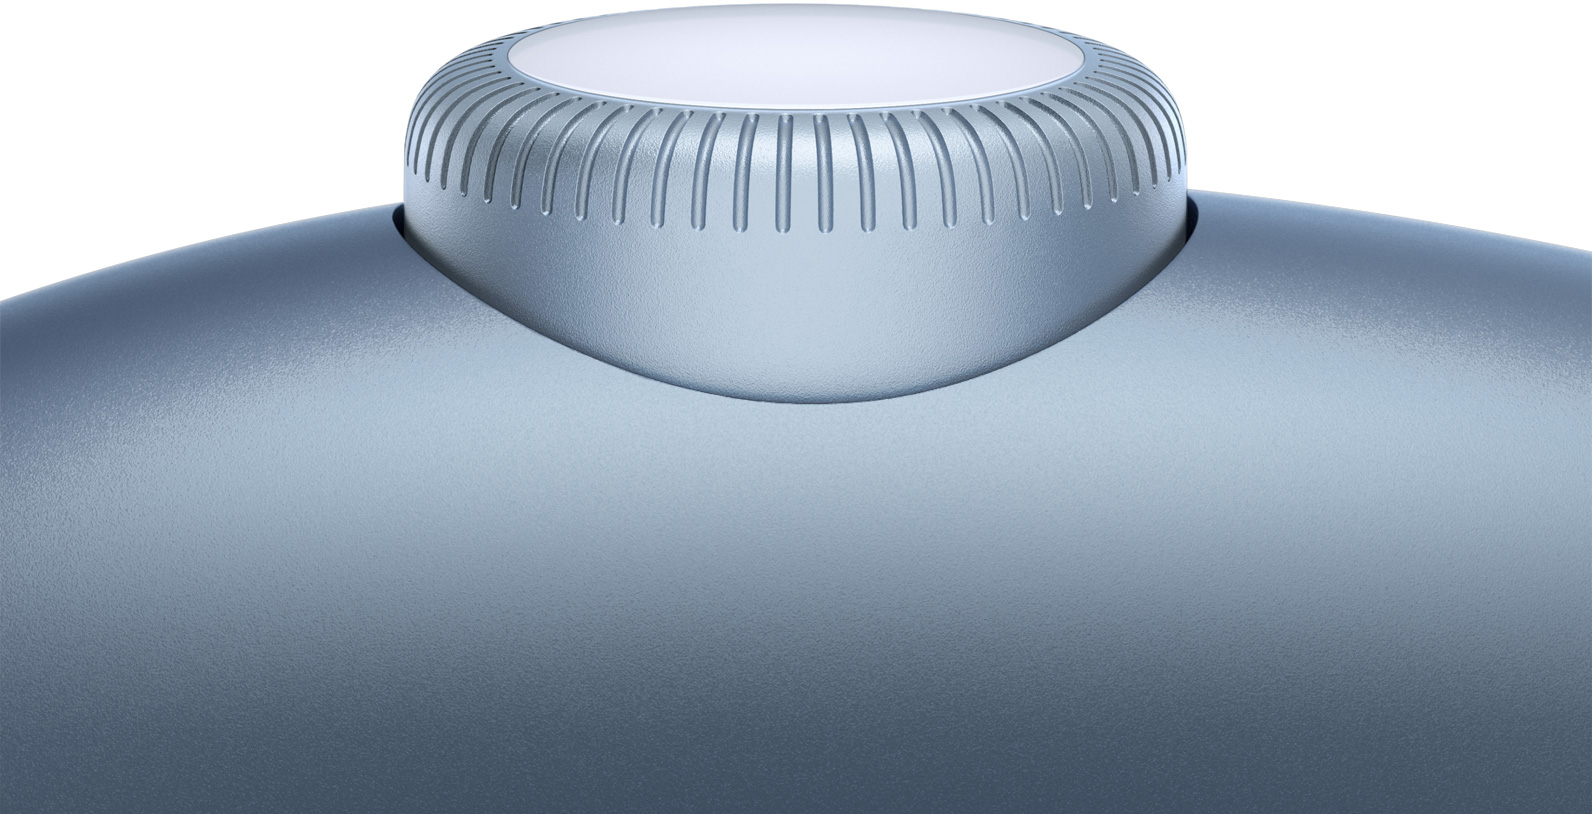 動畫近鏡展示天藍色 AirPods Max 耳罩上在轉動的數碼旋鈕。